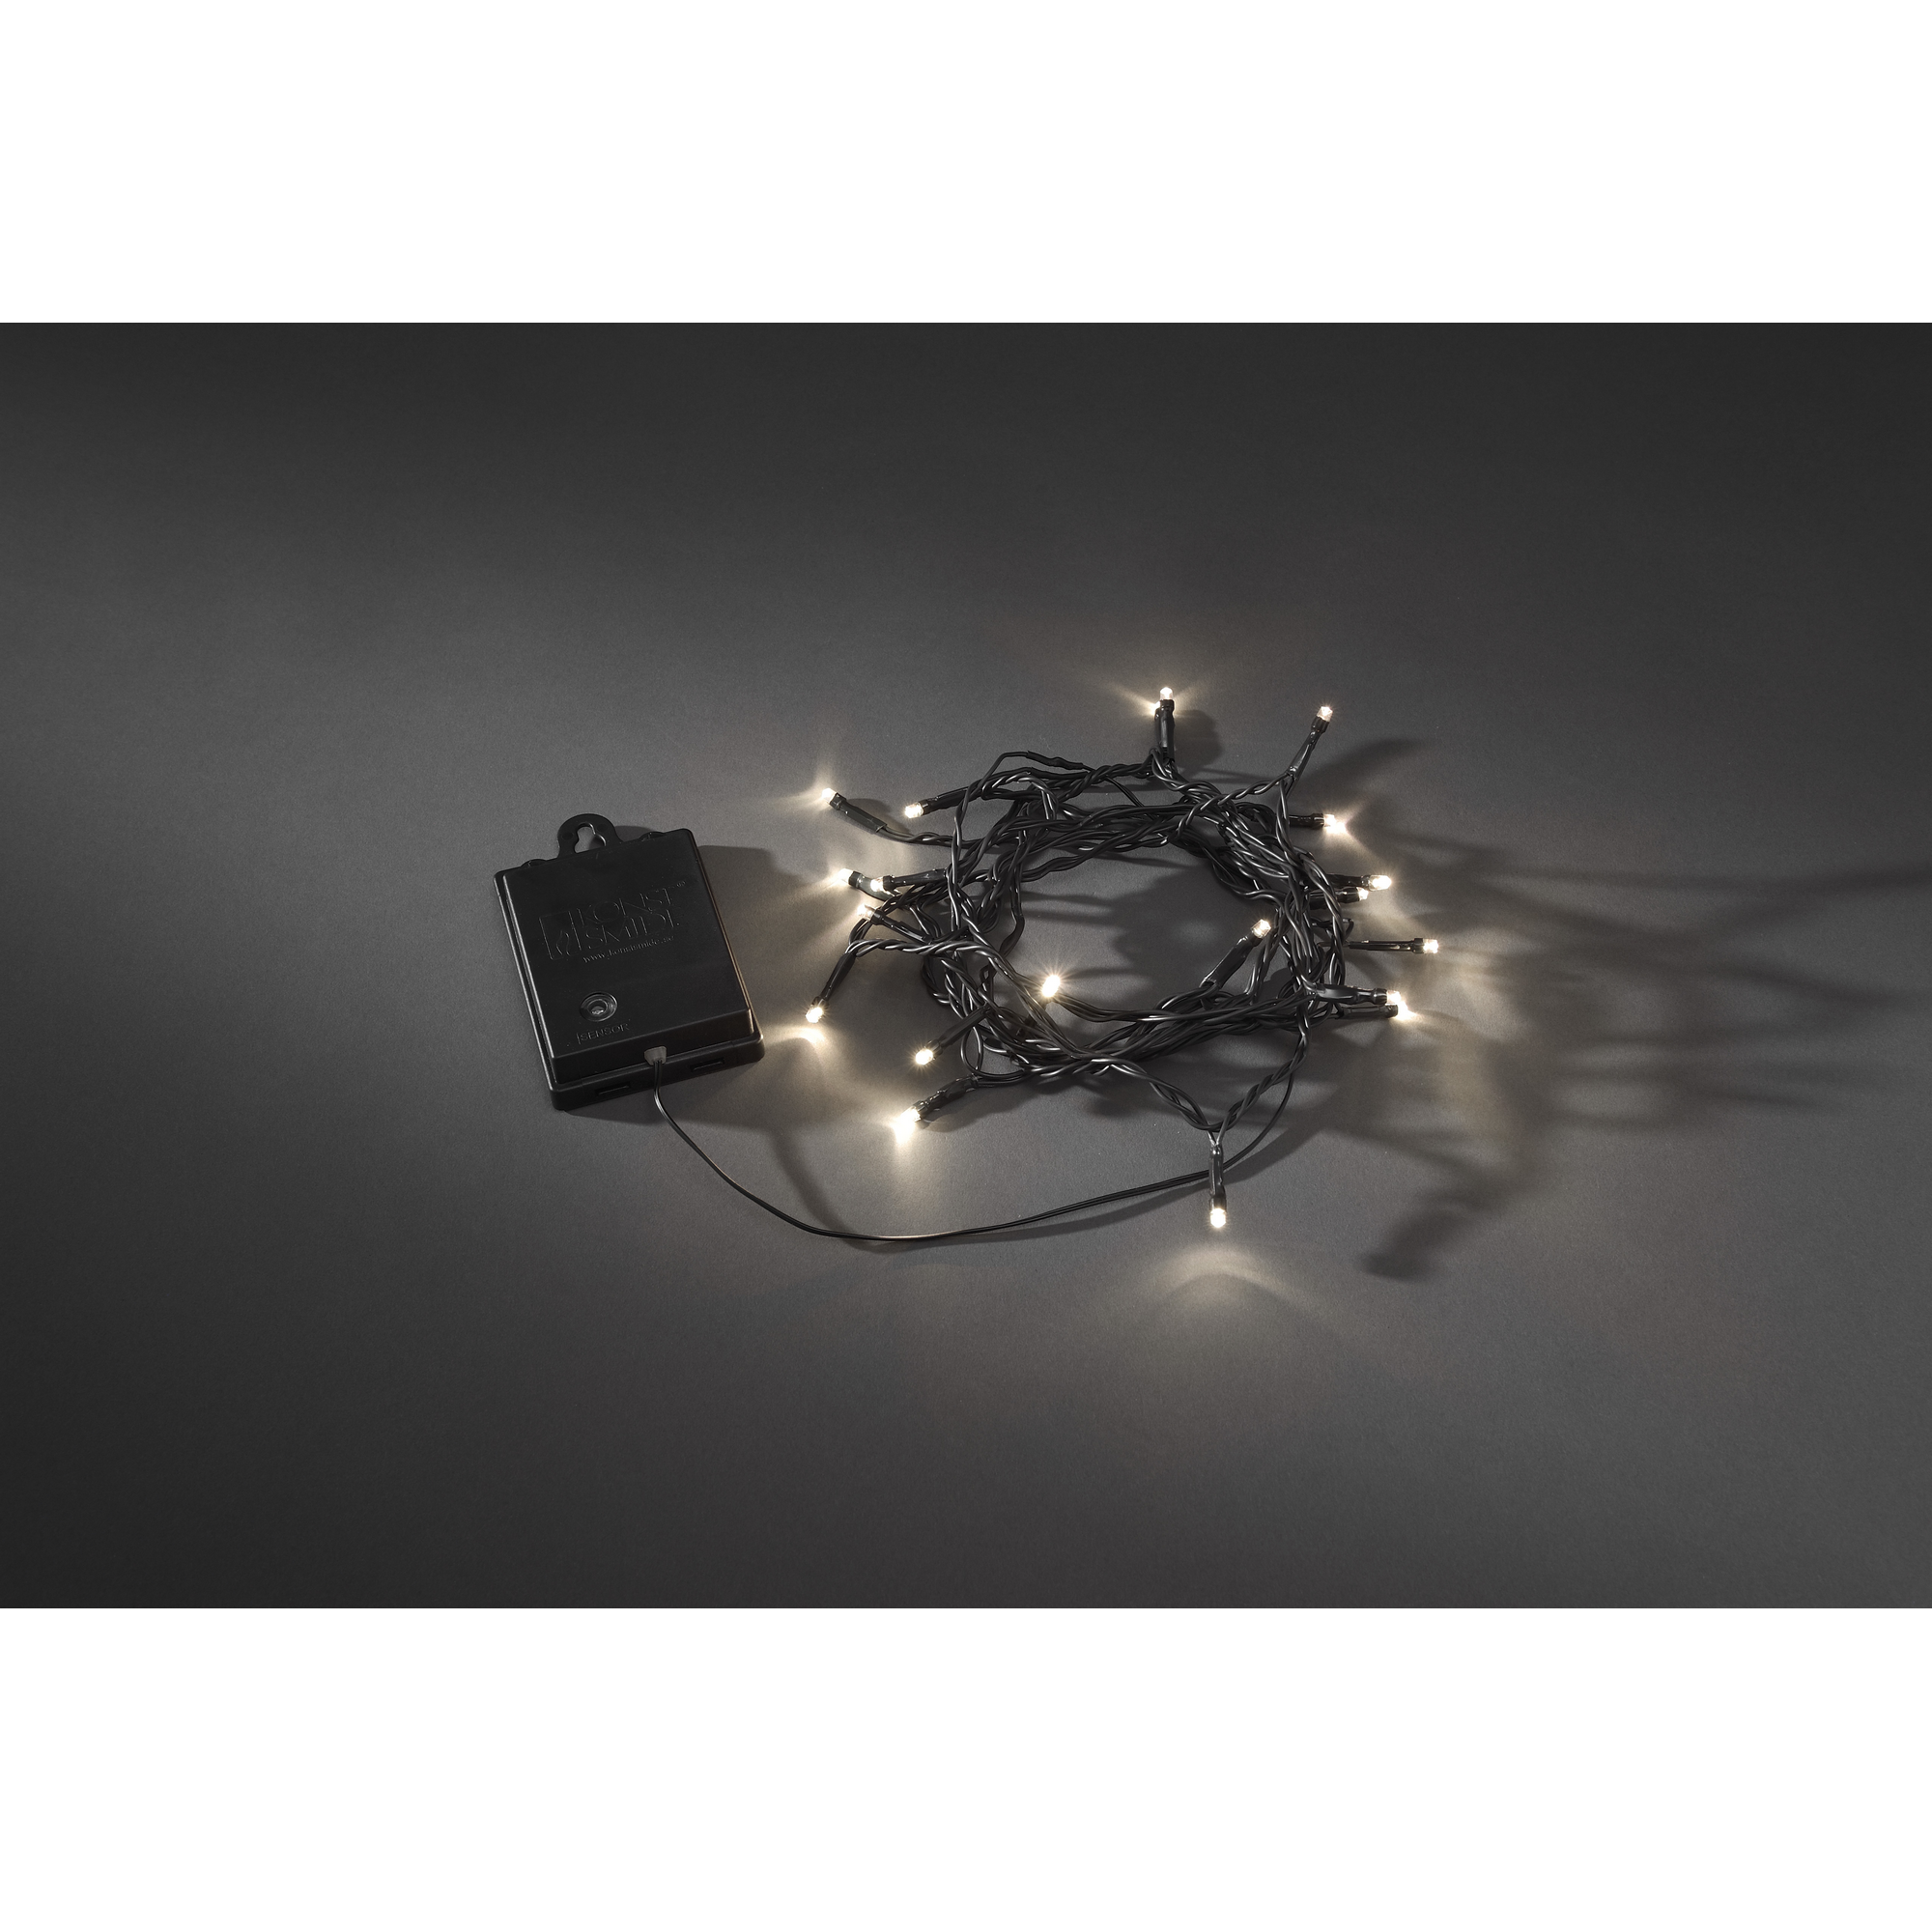 LED-Lichterkette schwarz 40 LEDs 44 m + product picture